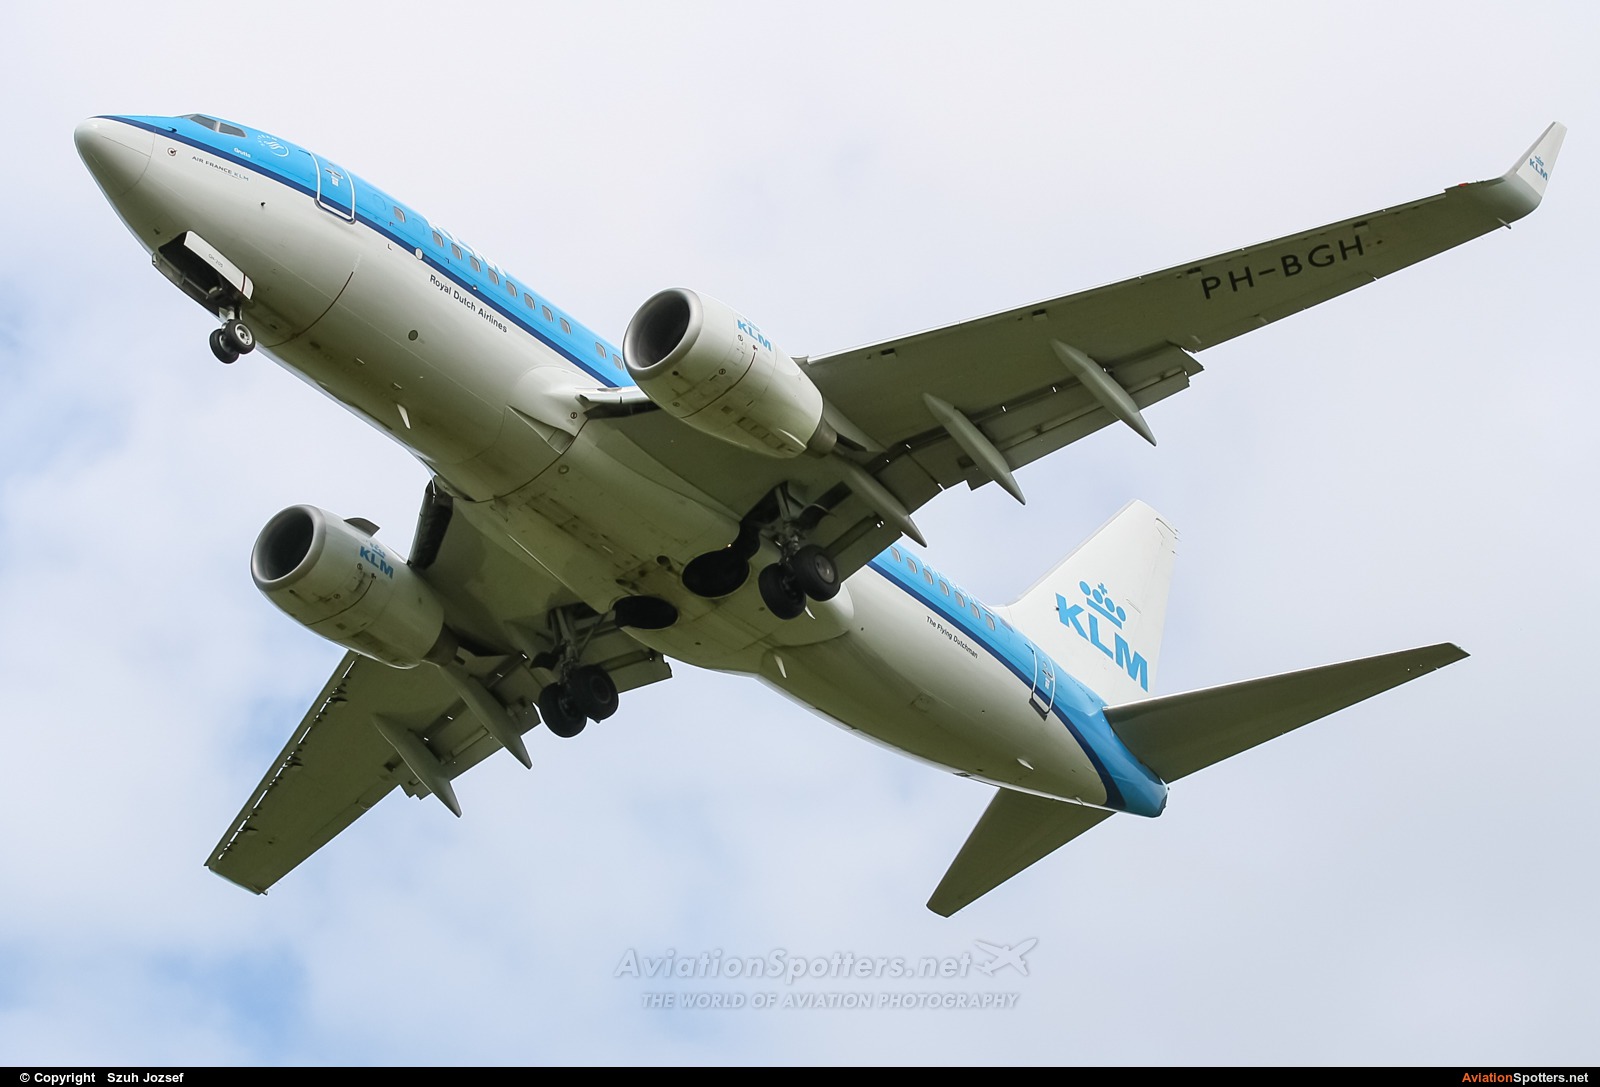 KLM  -  737-700  (PH-BGH) By Szuh Jozsef (szuh jozsef)